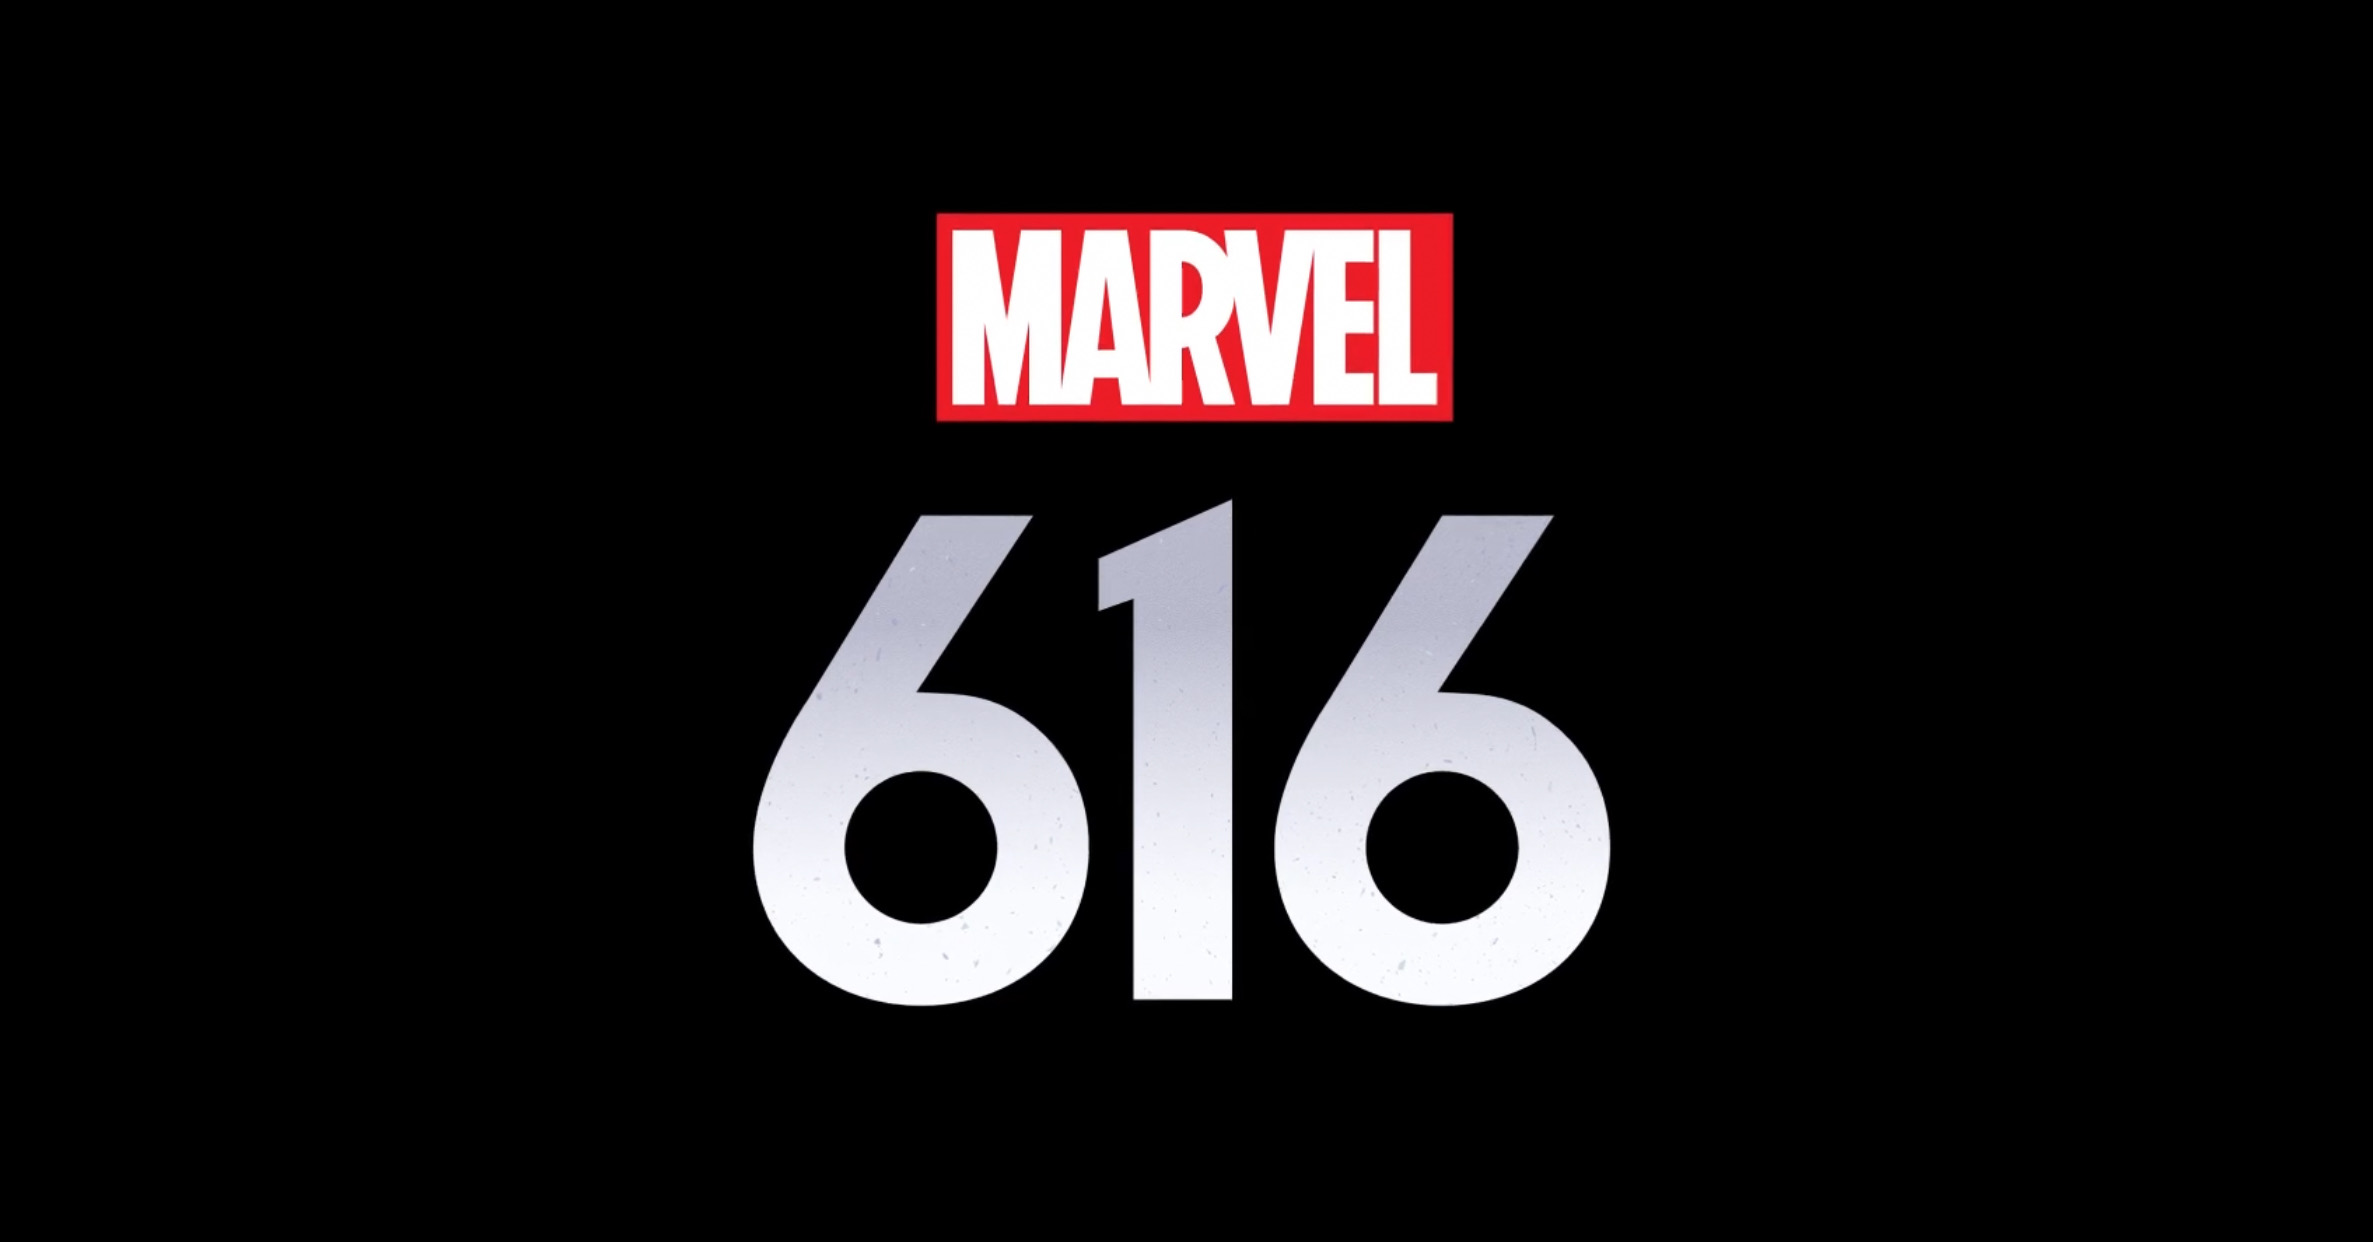 Marvel 616 - Due nuovi Teaser per la docu-serie Disney+